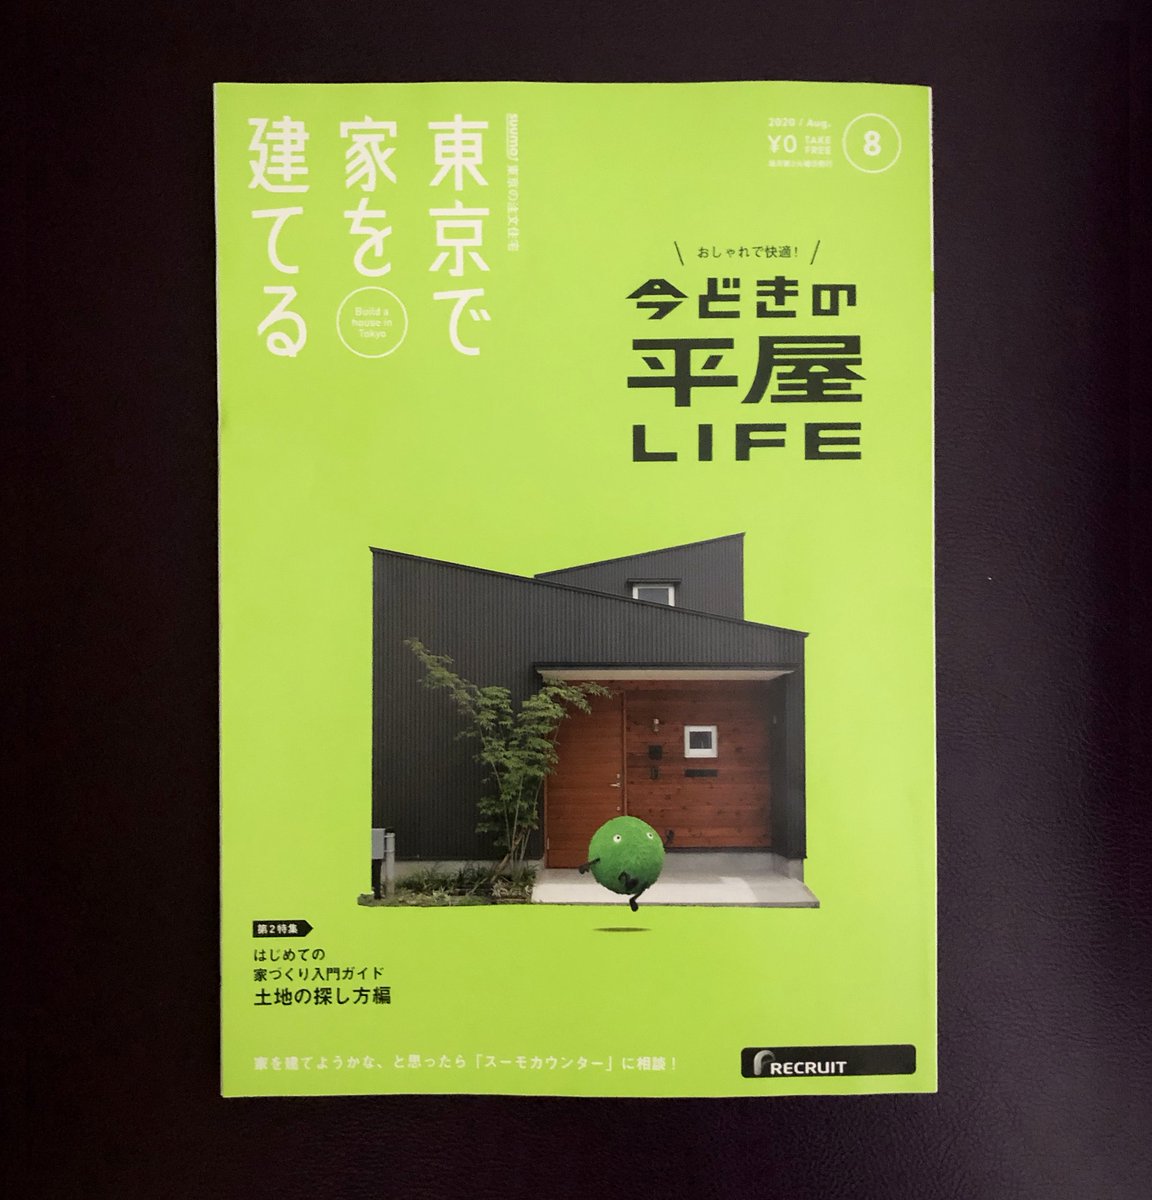 コルシカ イラストと漫画を描きました Suumo東京の住宅シリーズ 東京で家を建てる 8月号 今どきの平屋事情について漫画で解説してます 都内の駅 コンビニなどで無料で配布中です